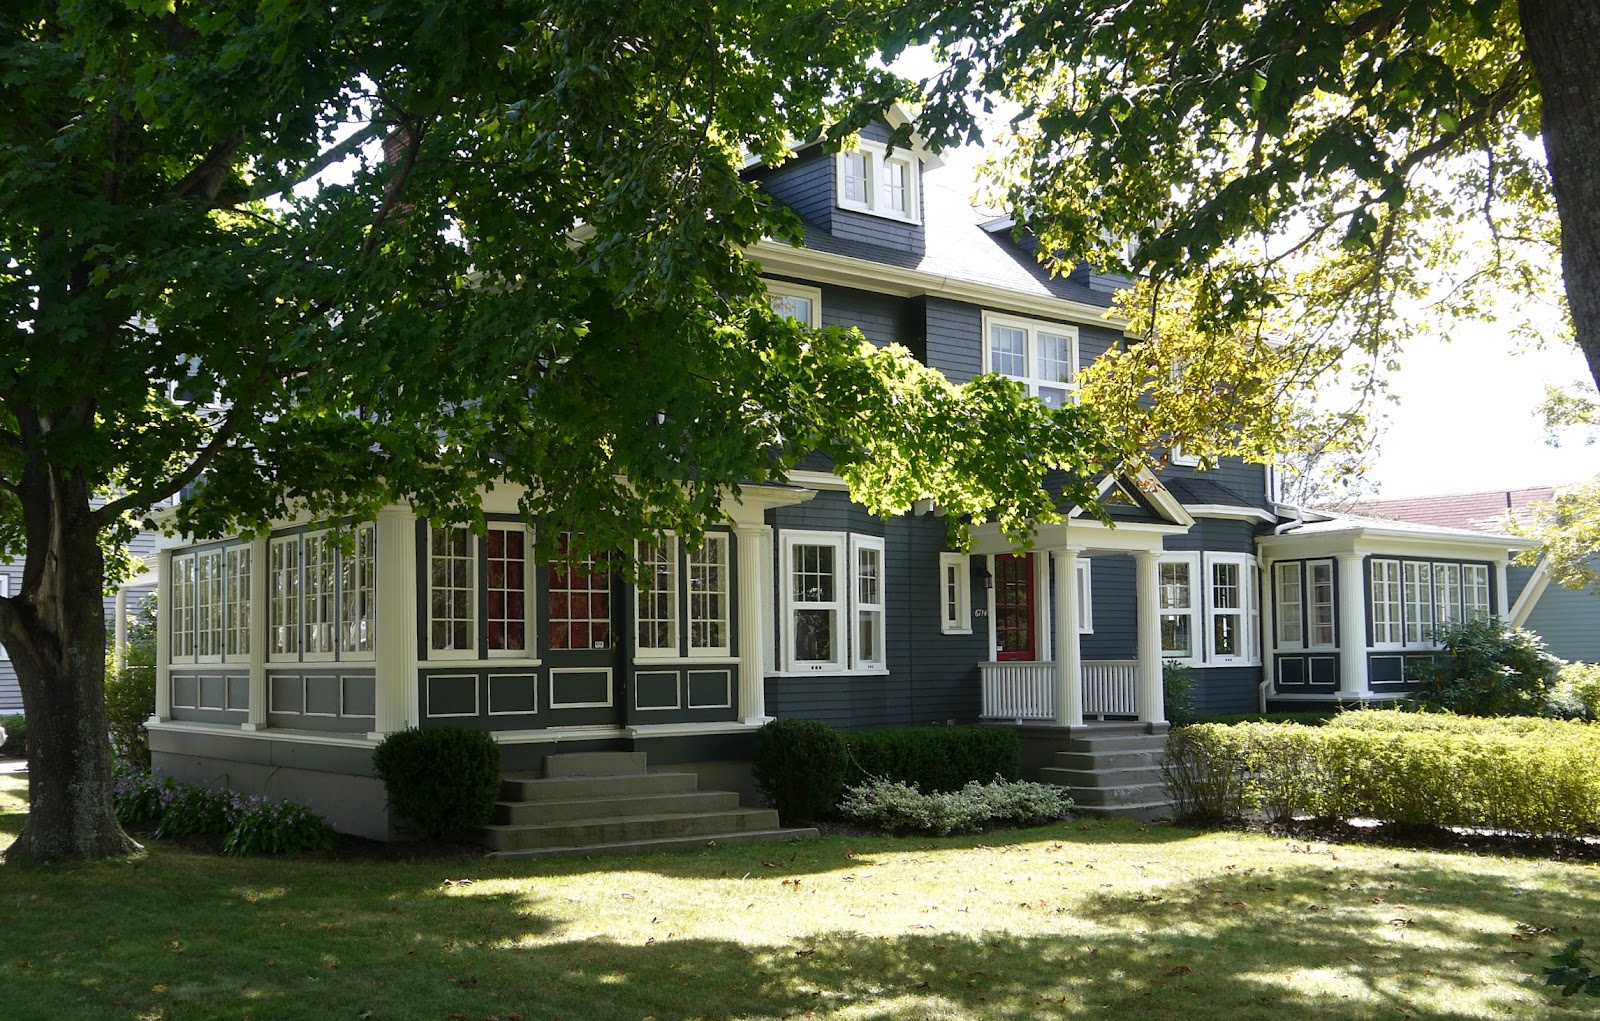 Sense and Simplicity Colourful Nova Scotia Homes